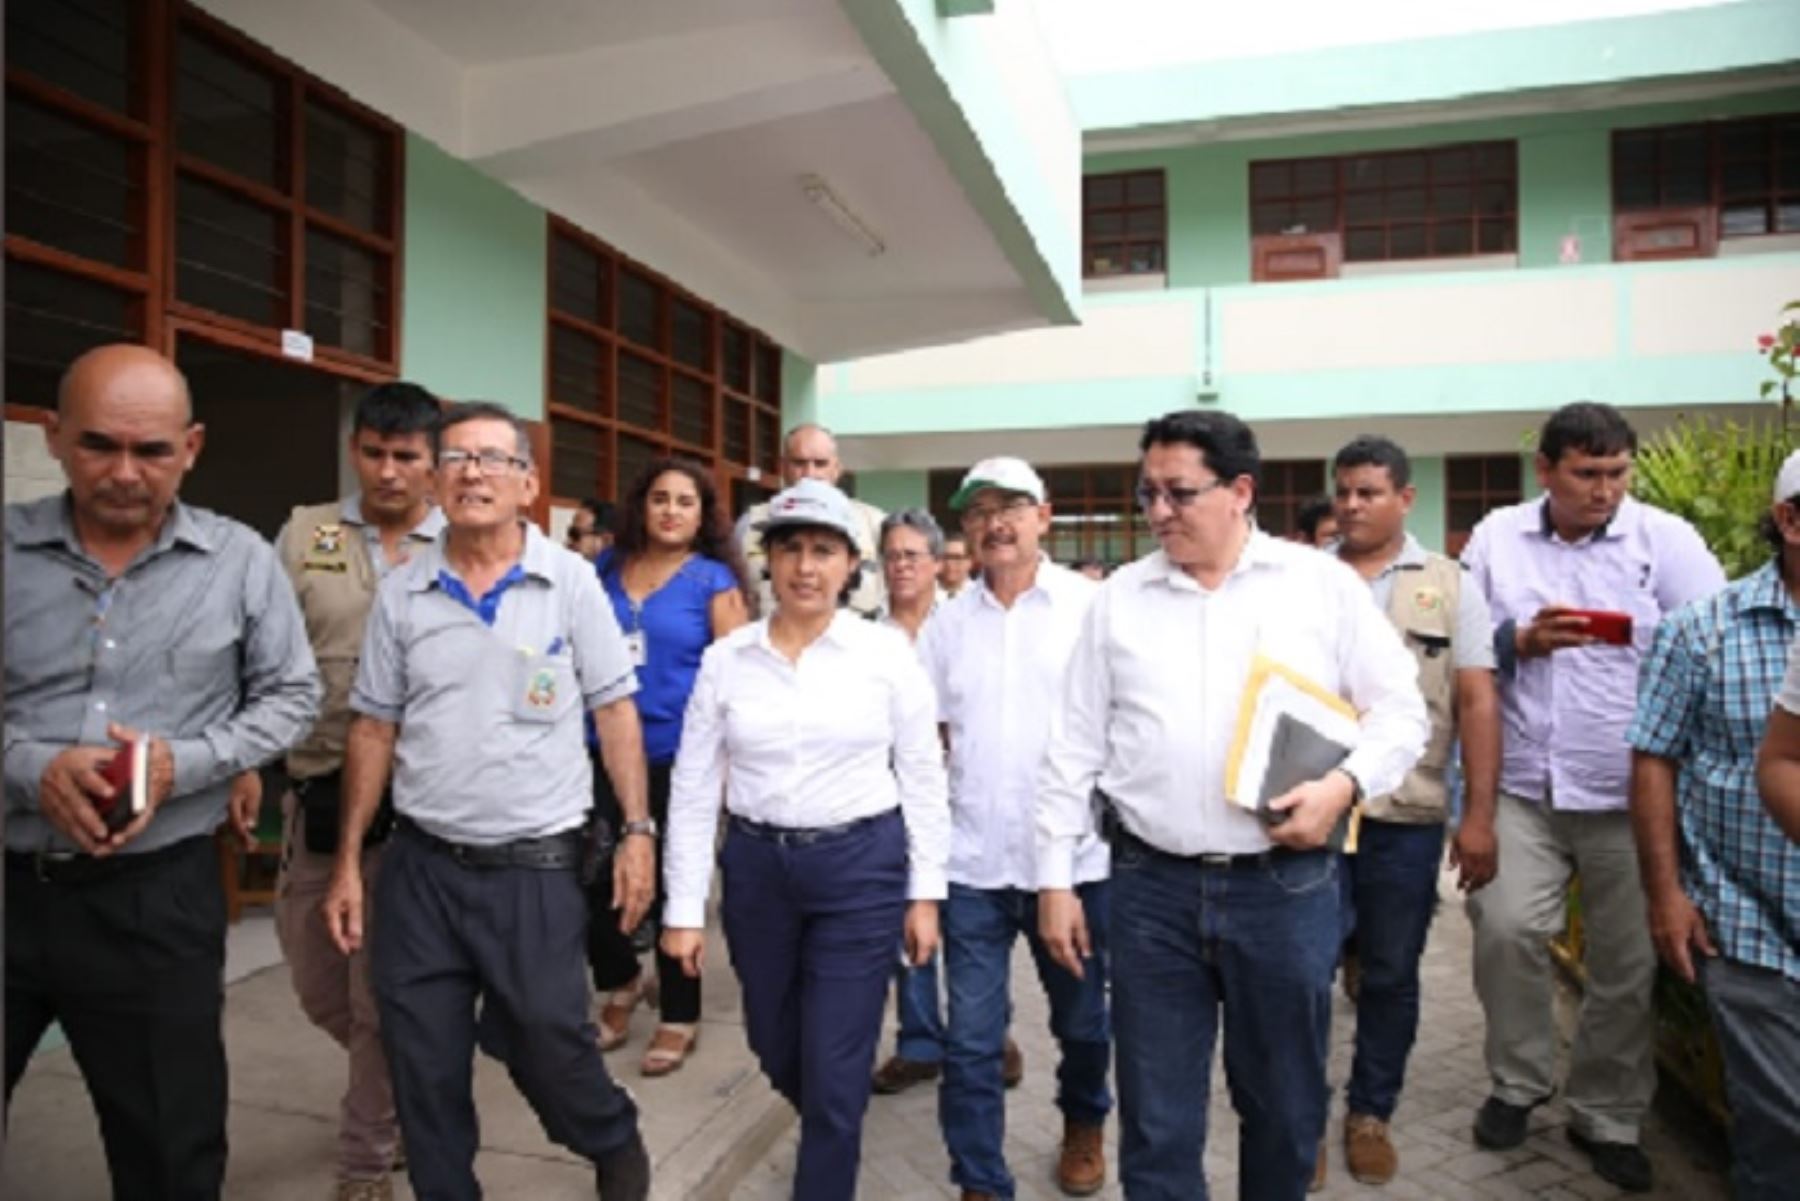 La ministra de Trabajo, Sylvia Cáceres, visitó hospitales y  una institución educativa para verificar el cumplimiento de lineamientos de los ministerios de Salud y Educación para afrontar al coronavirus.